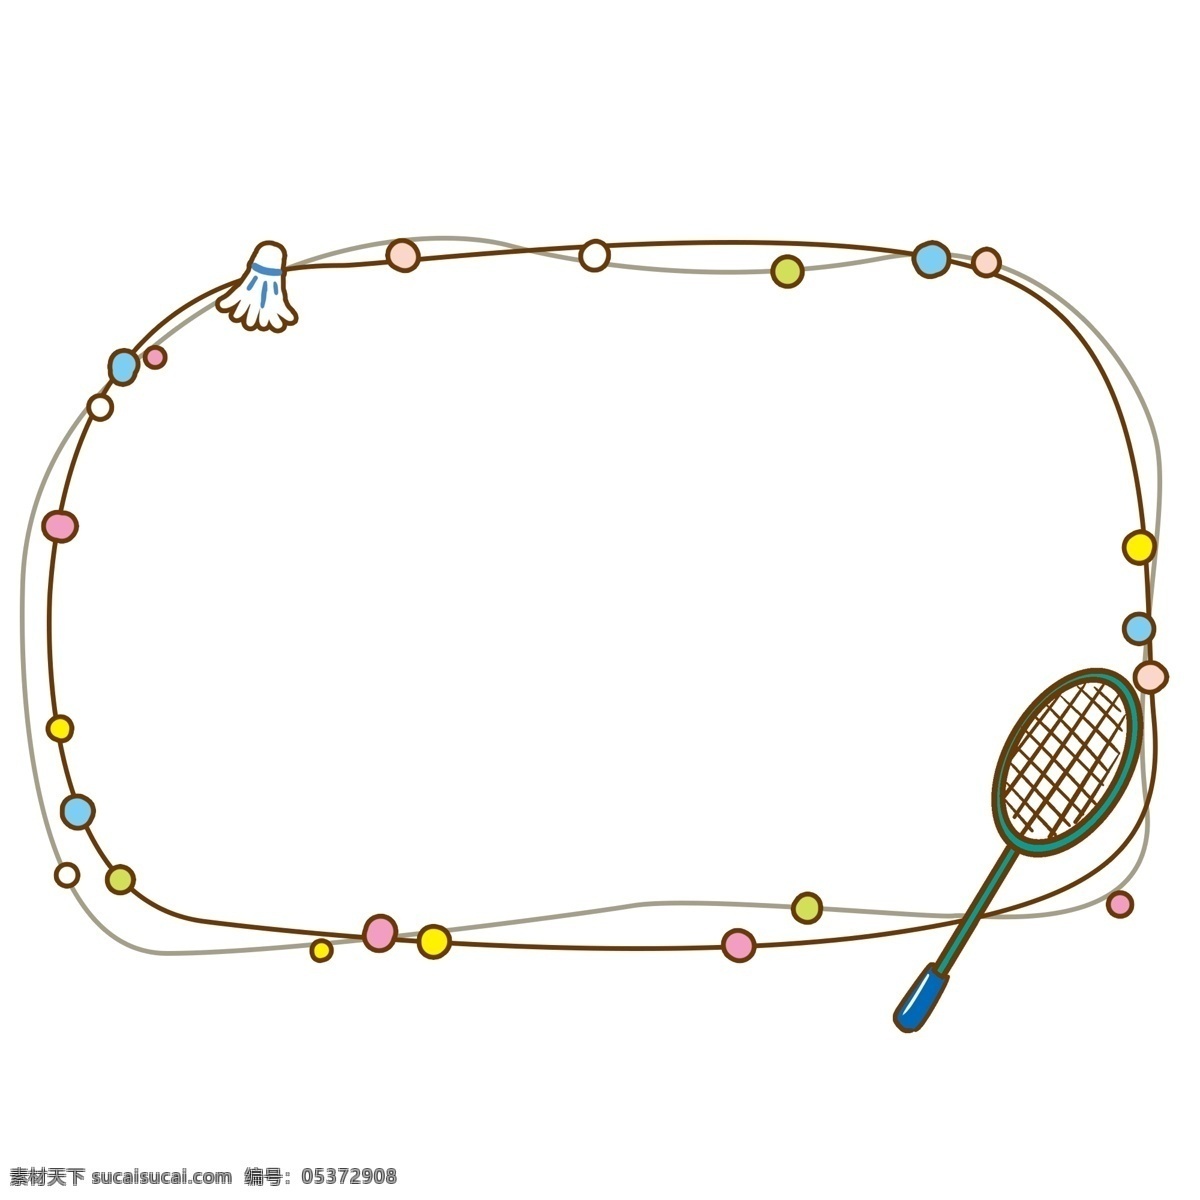 手绘 羽毛球拍 对话框 插画 手绘对话框 羽毛球 网球拍对话框 羽毛球对话框 运动对话框